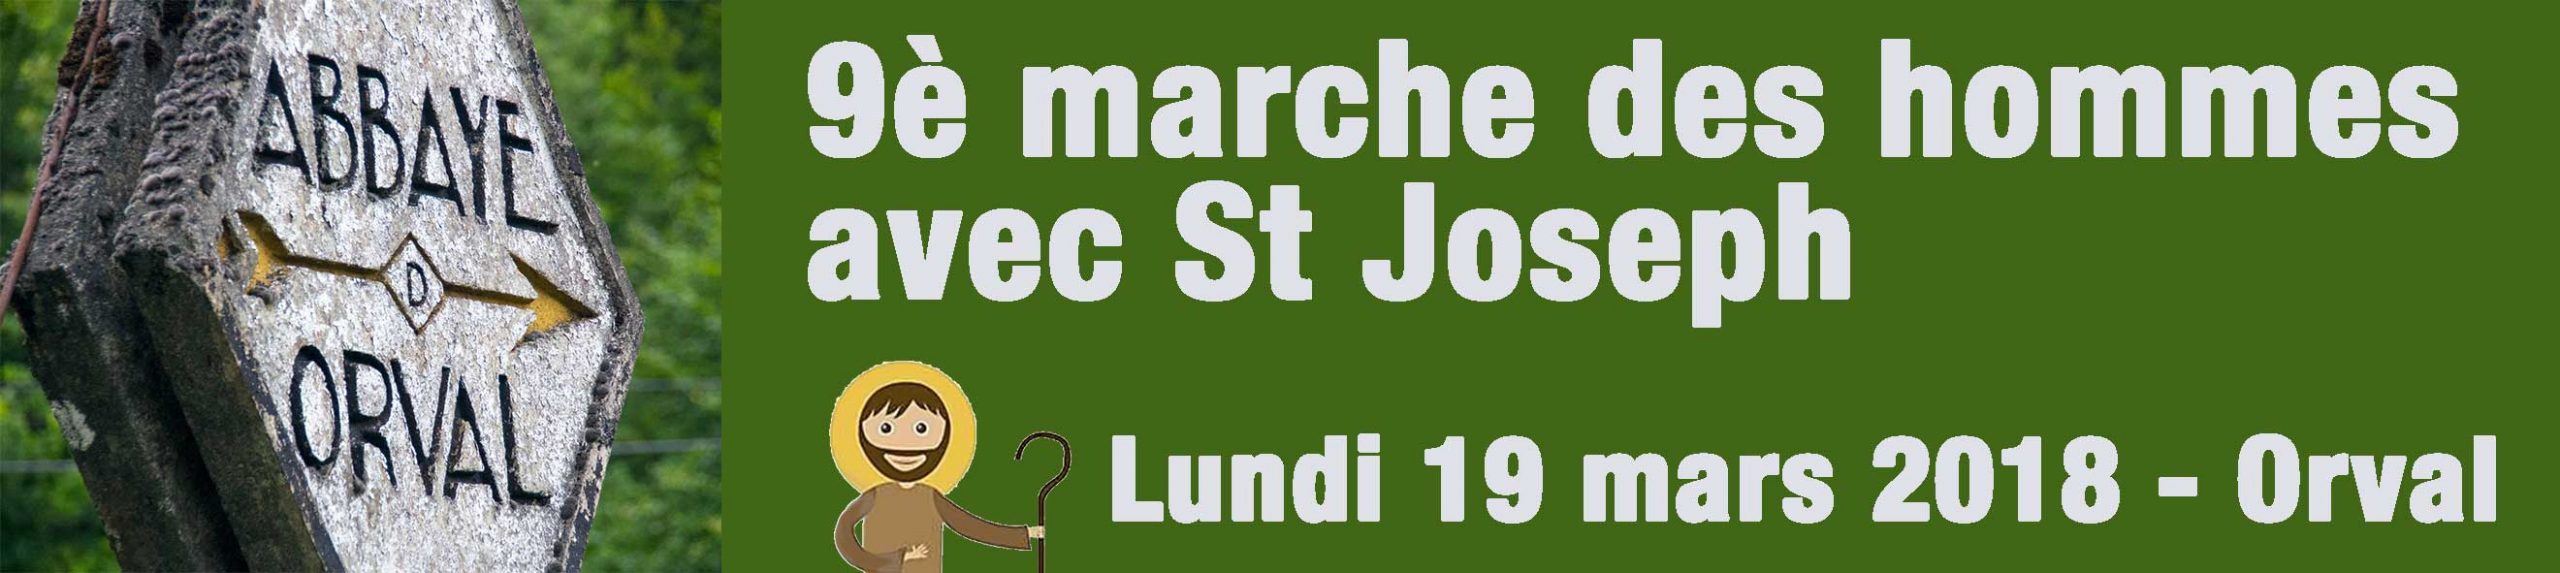 Orval (Belgique), 19 mars : 9ème marche des hommes avec saint Joseph